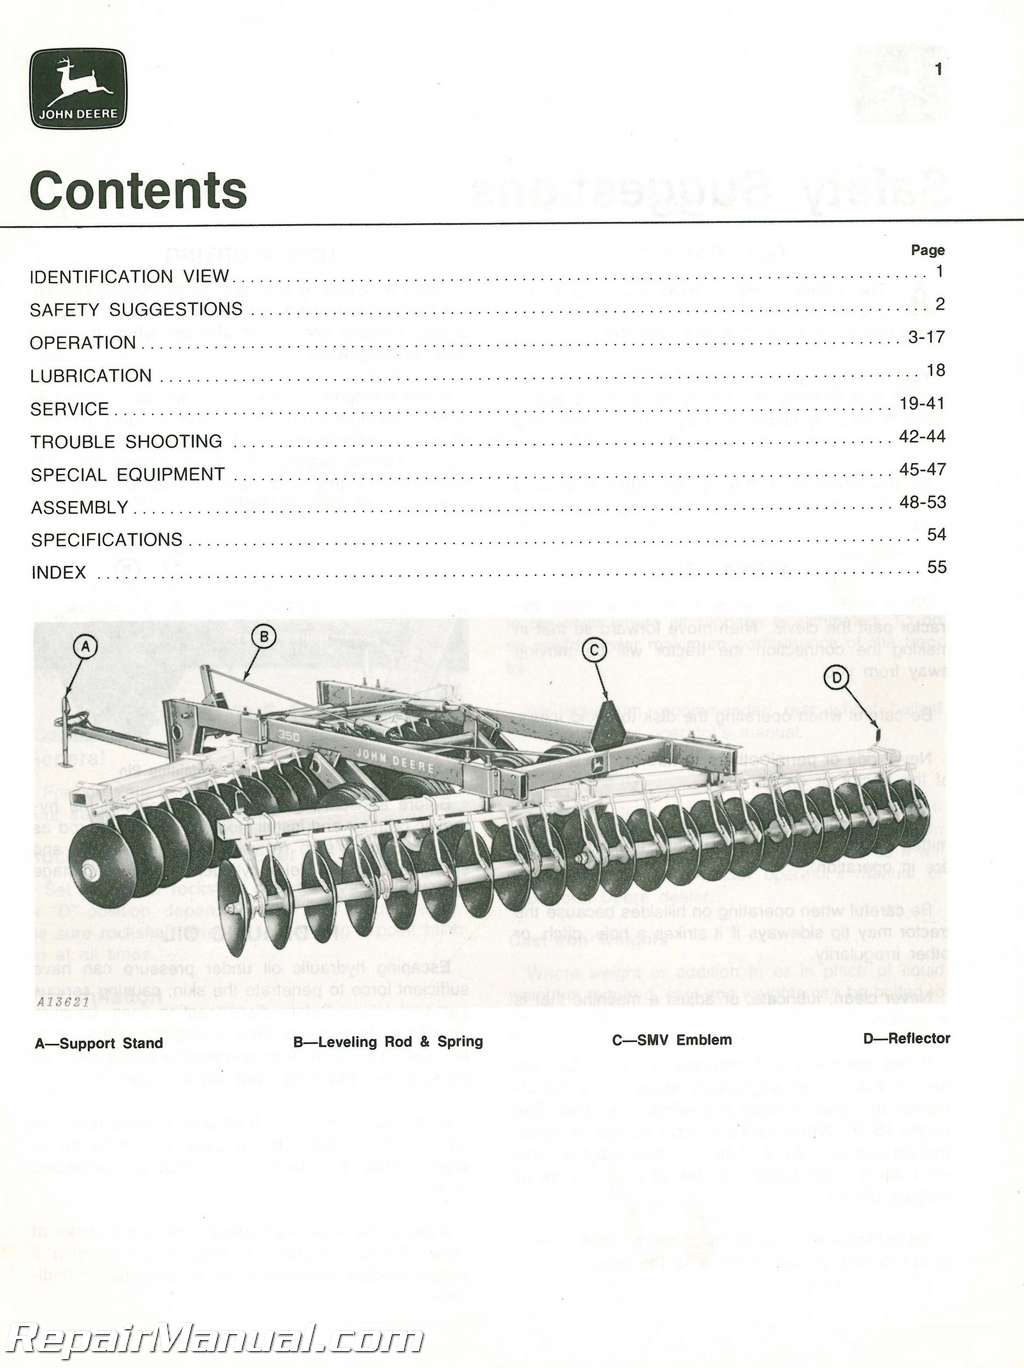 Used John Deere 350 Offset Disk Operators Manual